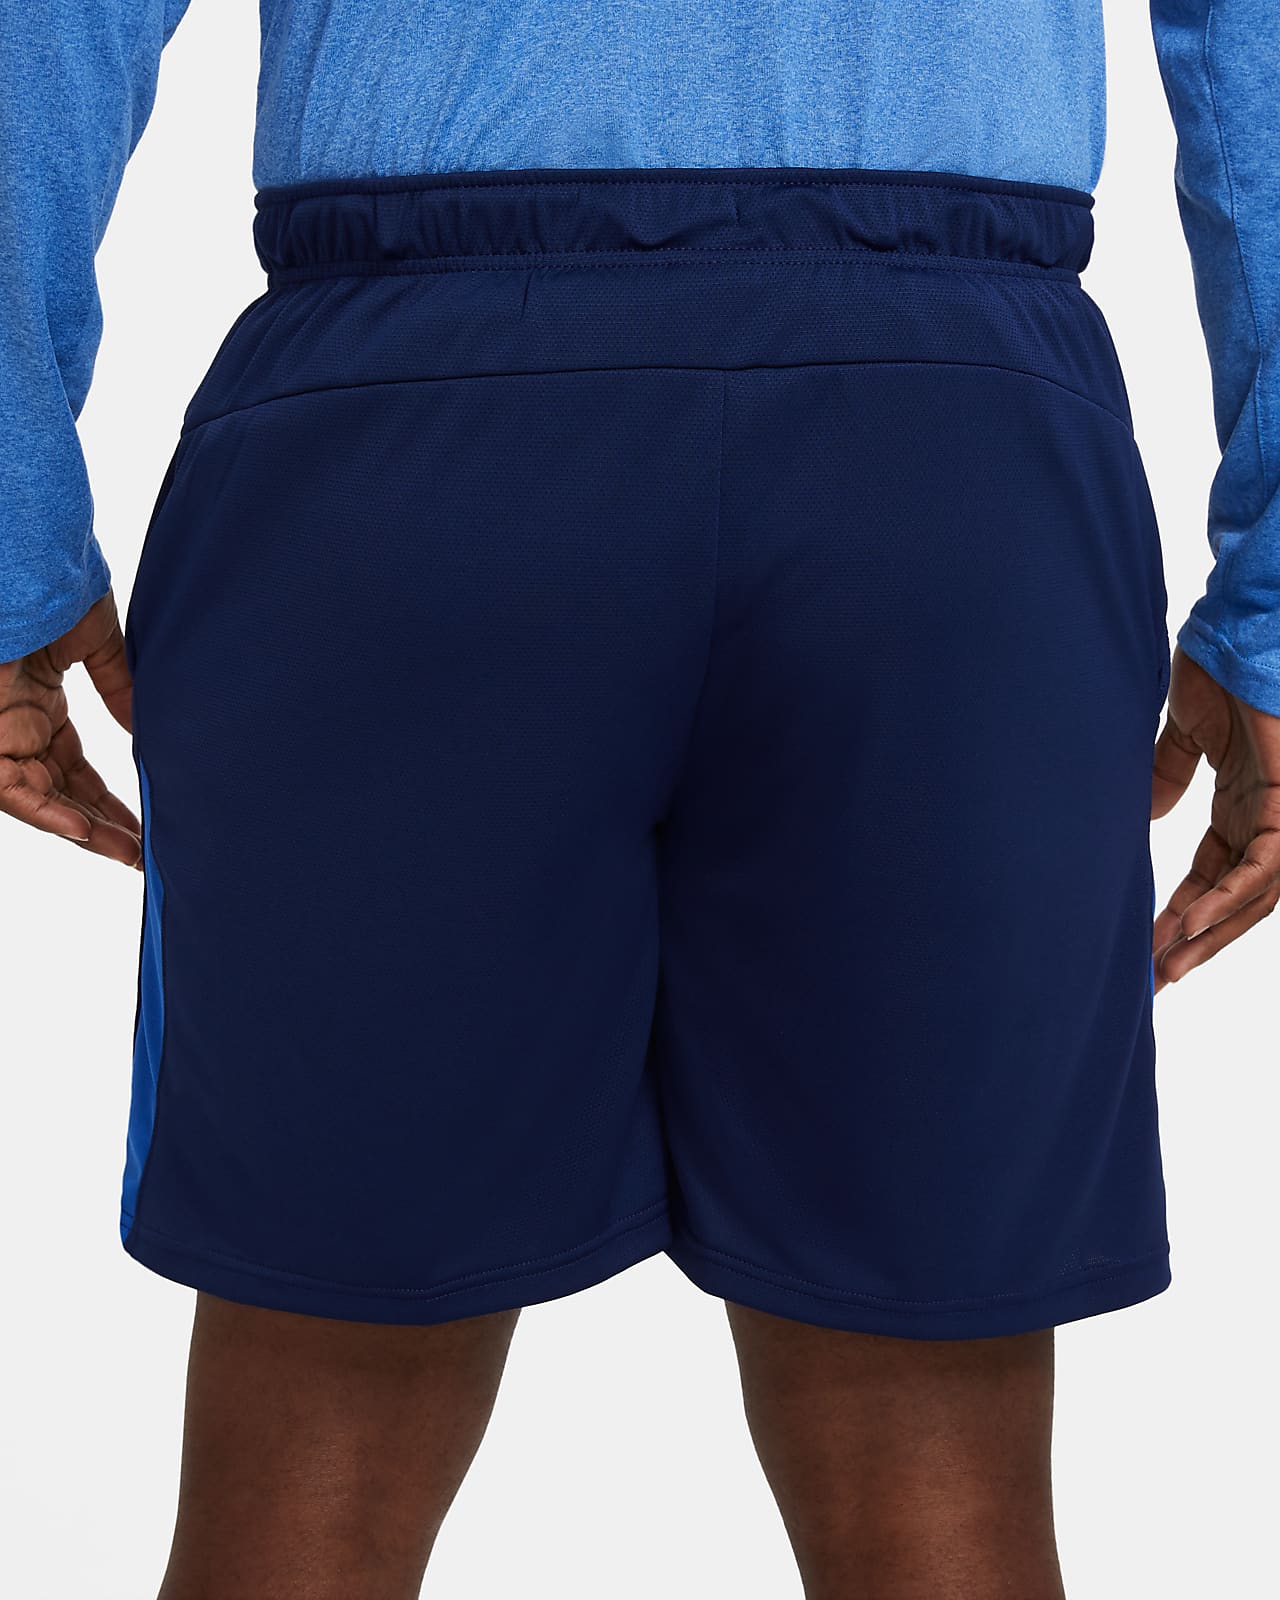 nike blue shorts men